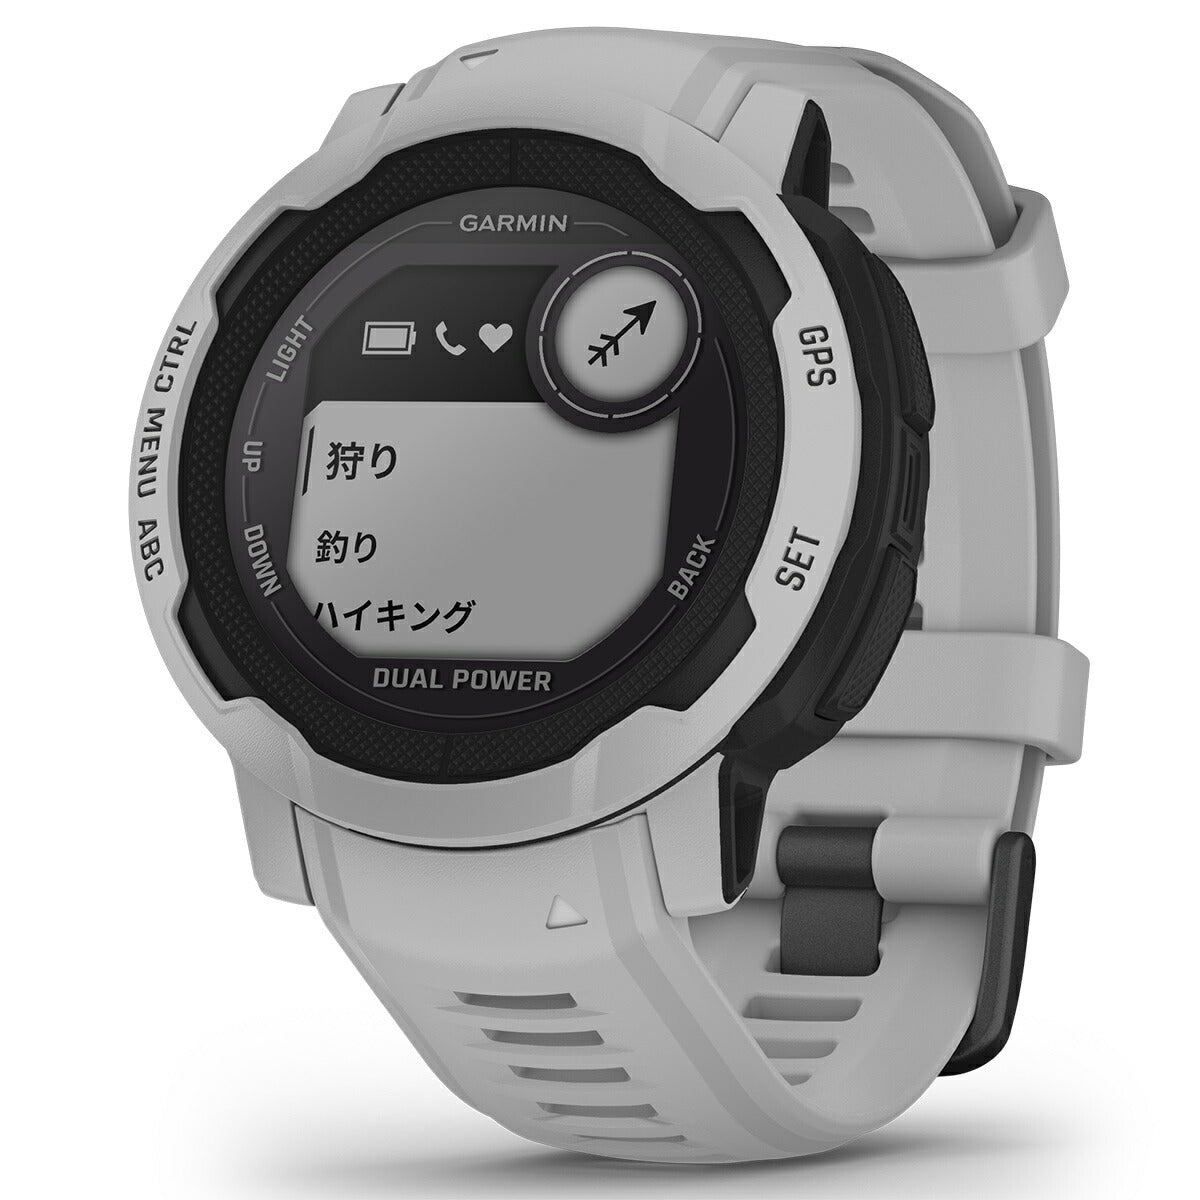 ガーミン GARMIN Instinct 2 Dual Power インスティンクト2 デュアルパワー GPS スマートウォッチ アウトドア 腕時計 メンズ レディース Mist Gray 010-02627-41